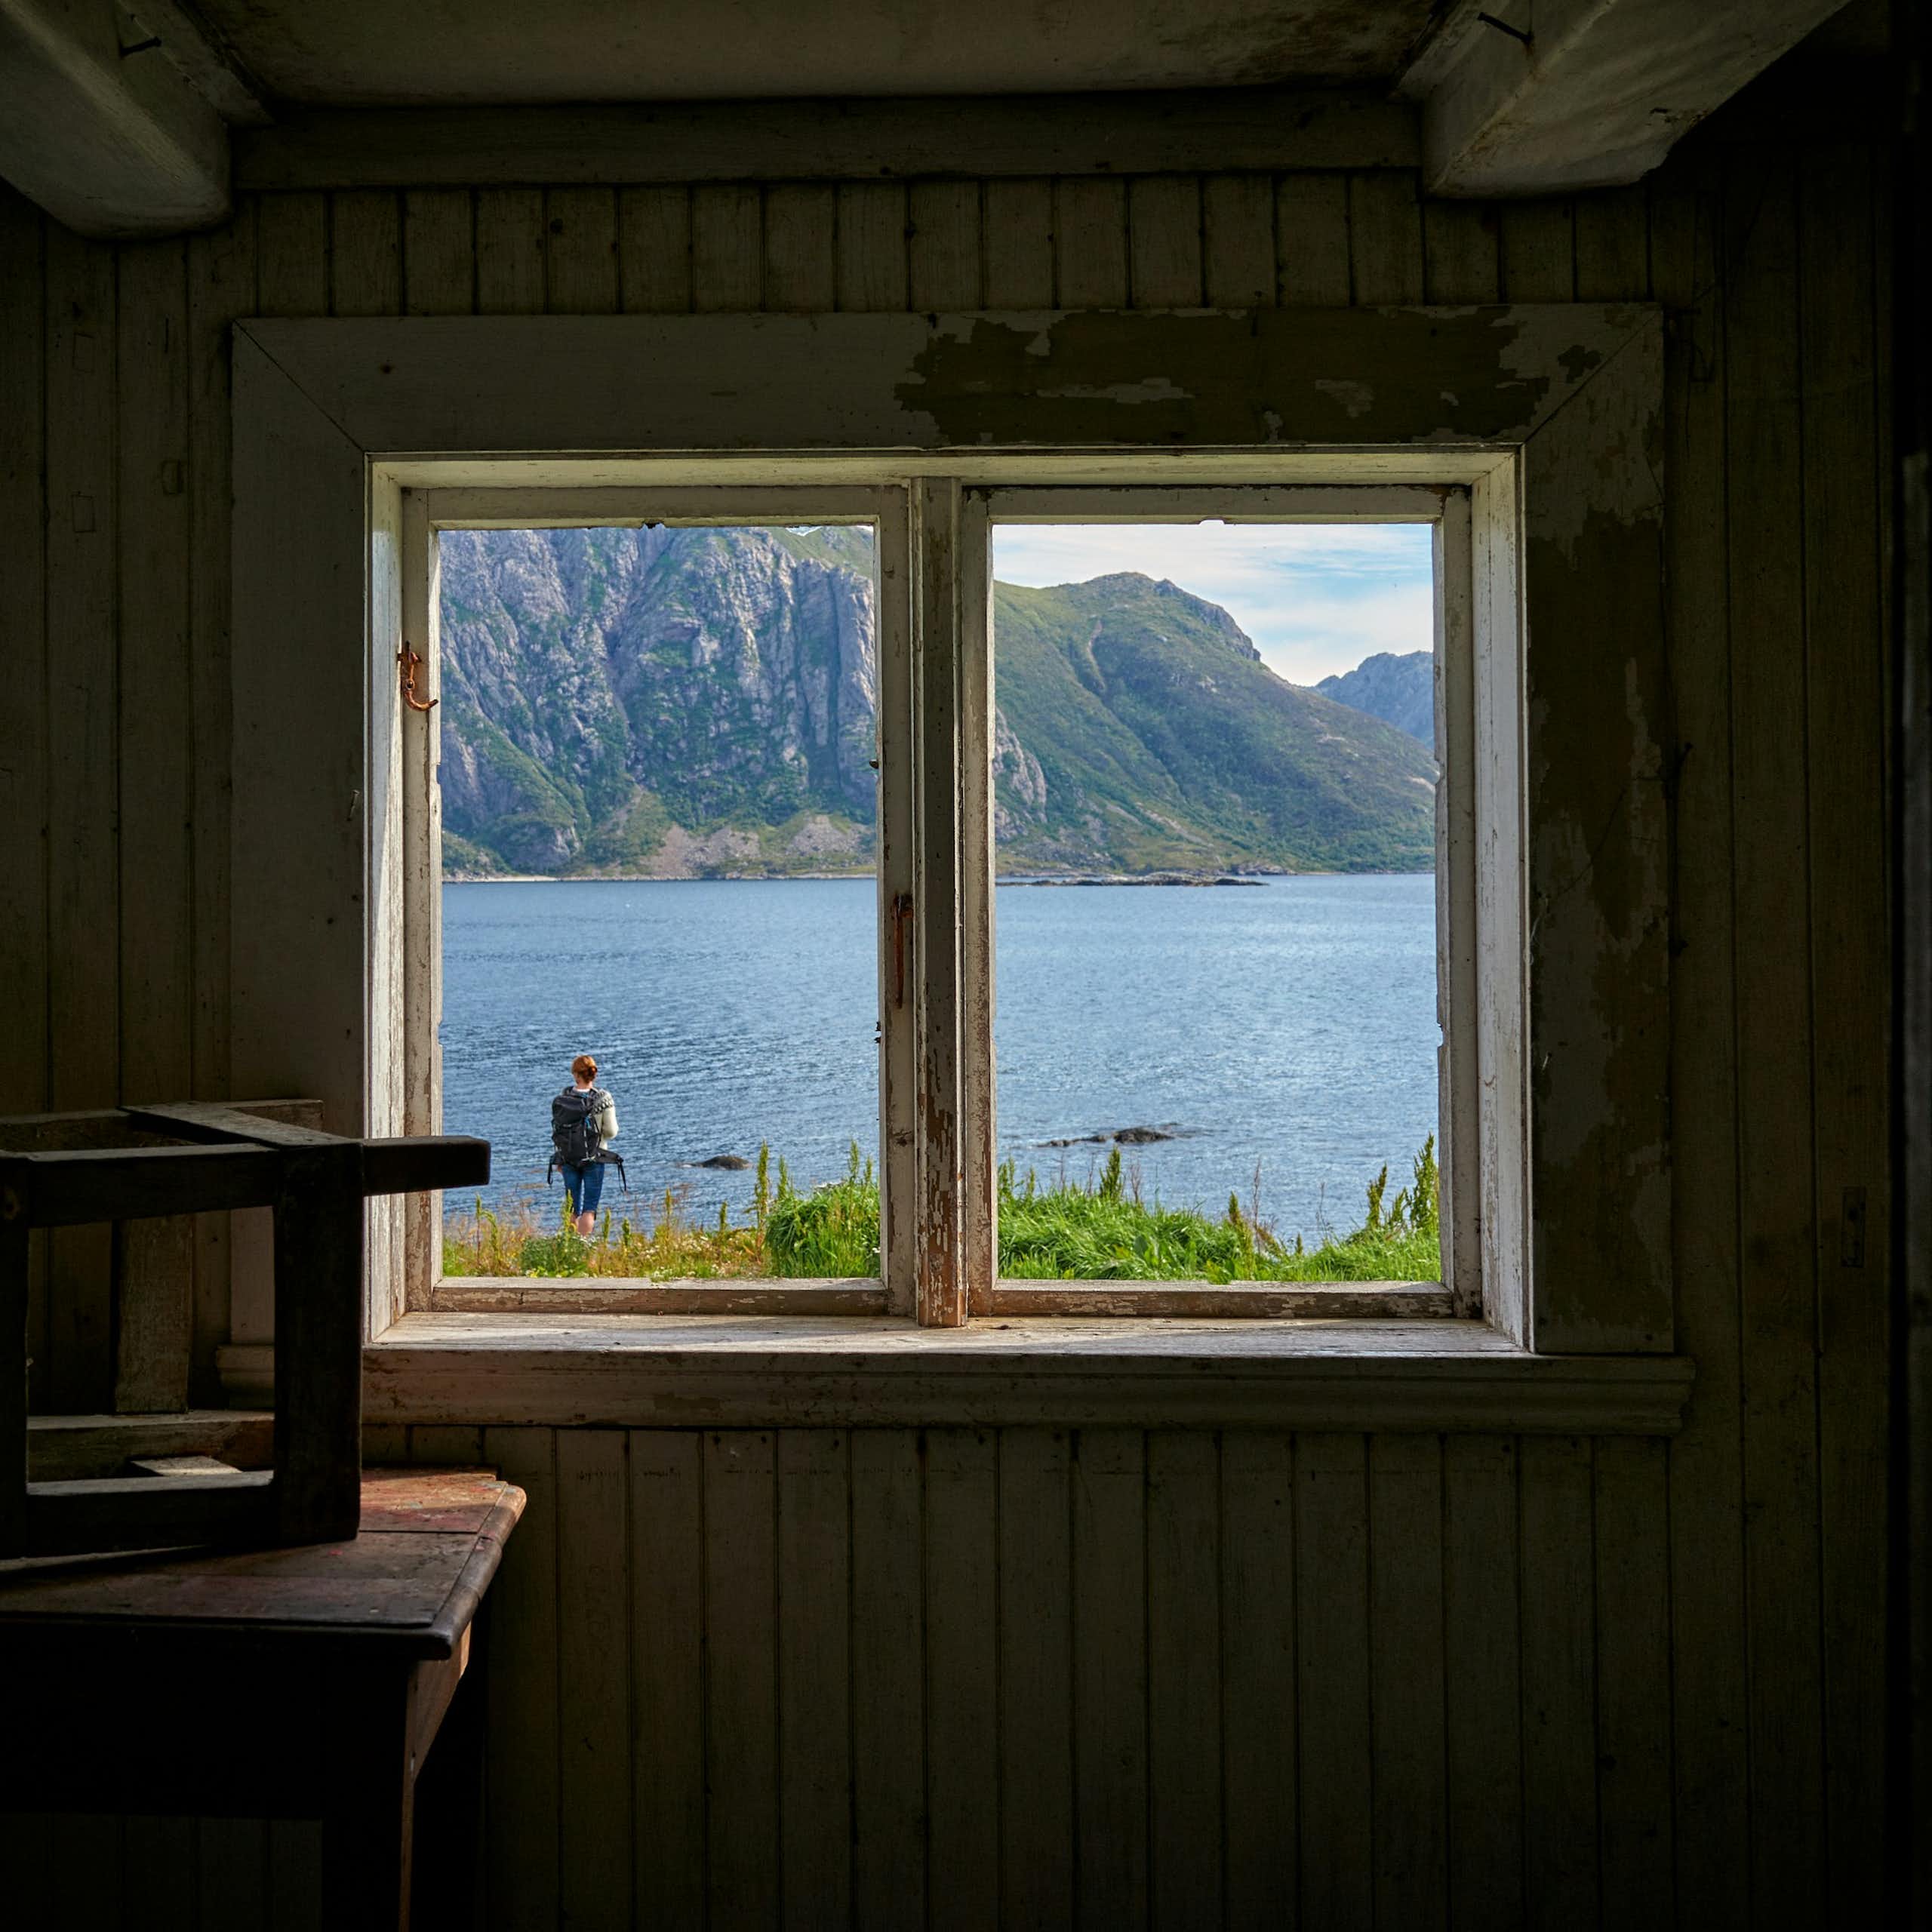 Une fenêtre dans un mur donne une vue sur un paysage lacustre.